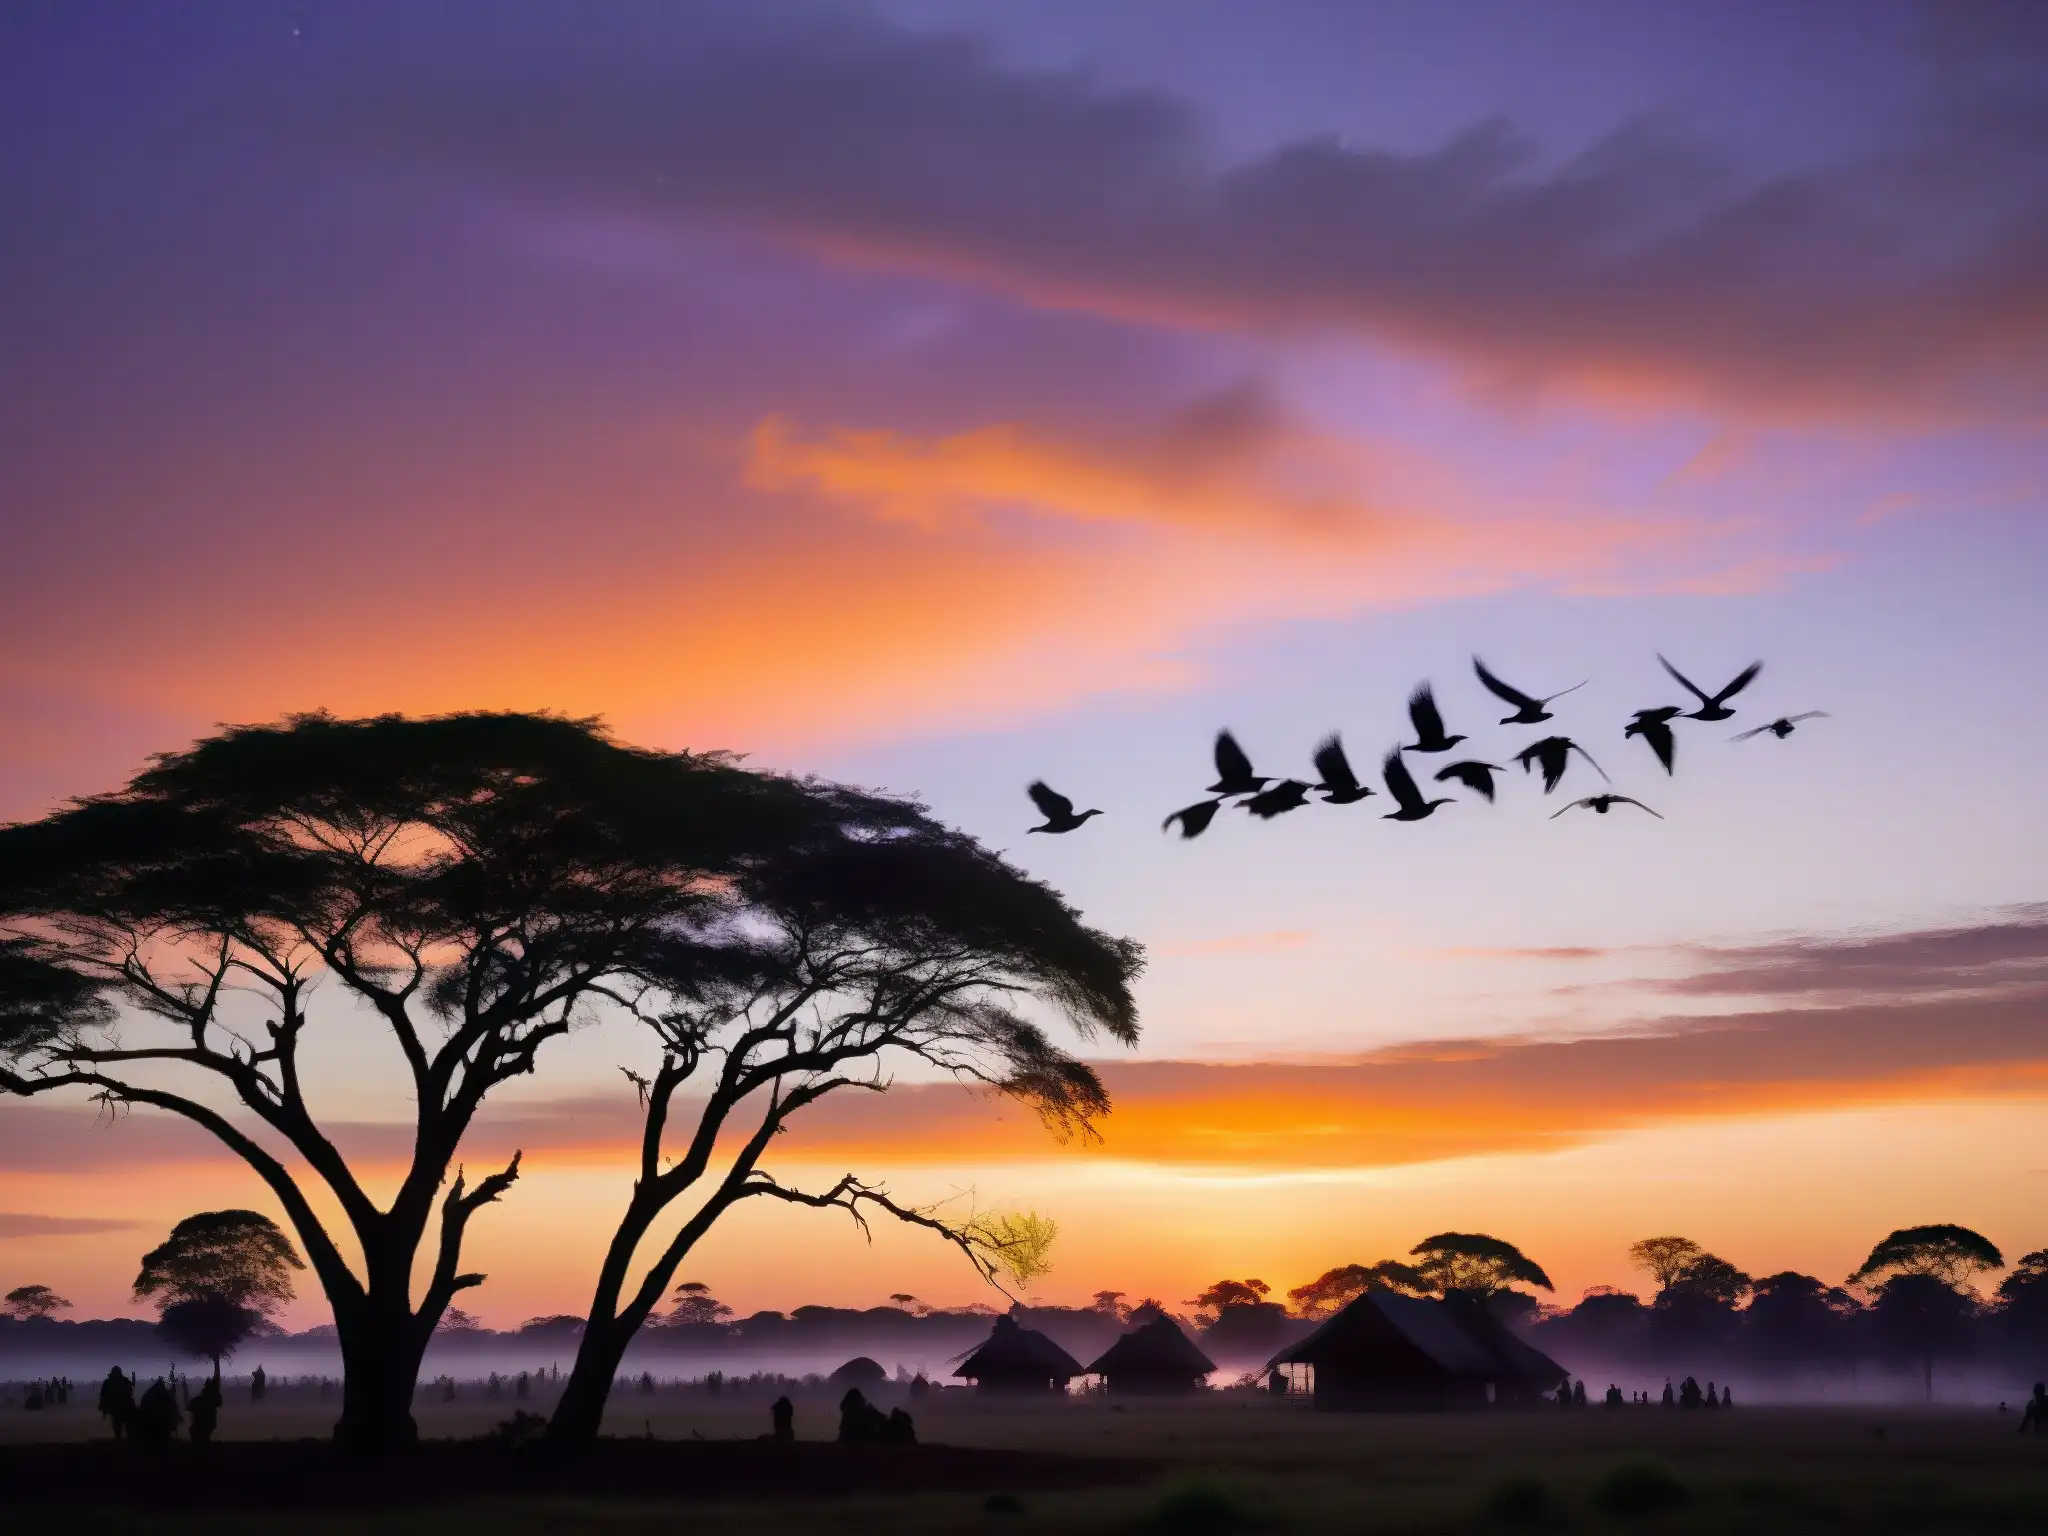 Un atardecer misterioso en Jatinga, con aves borrosas descendiendo hacia la aldea iluminada